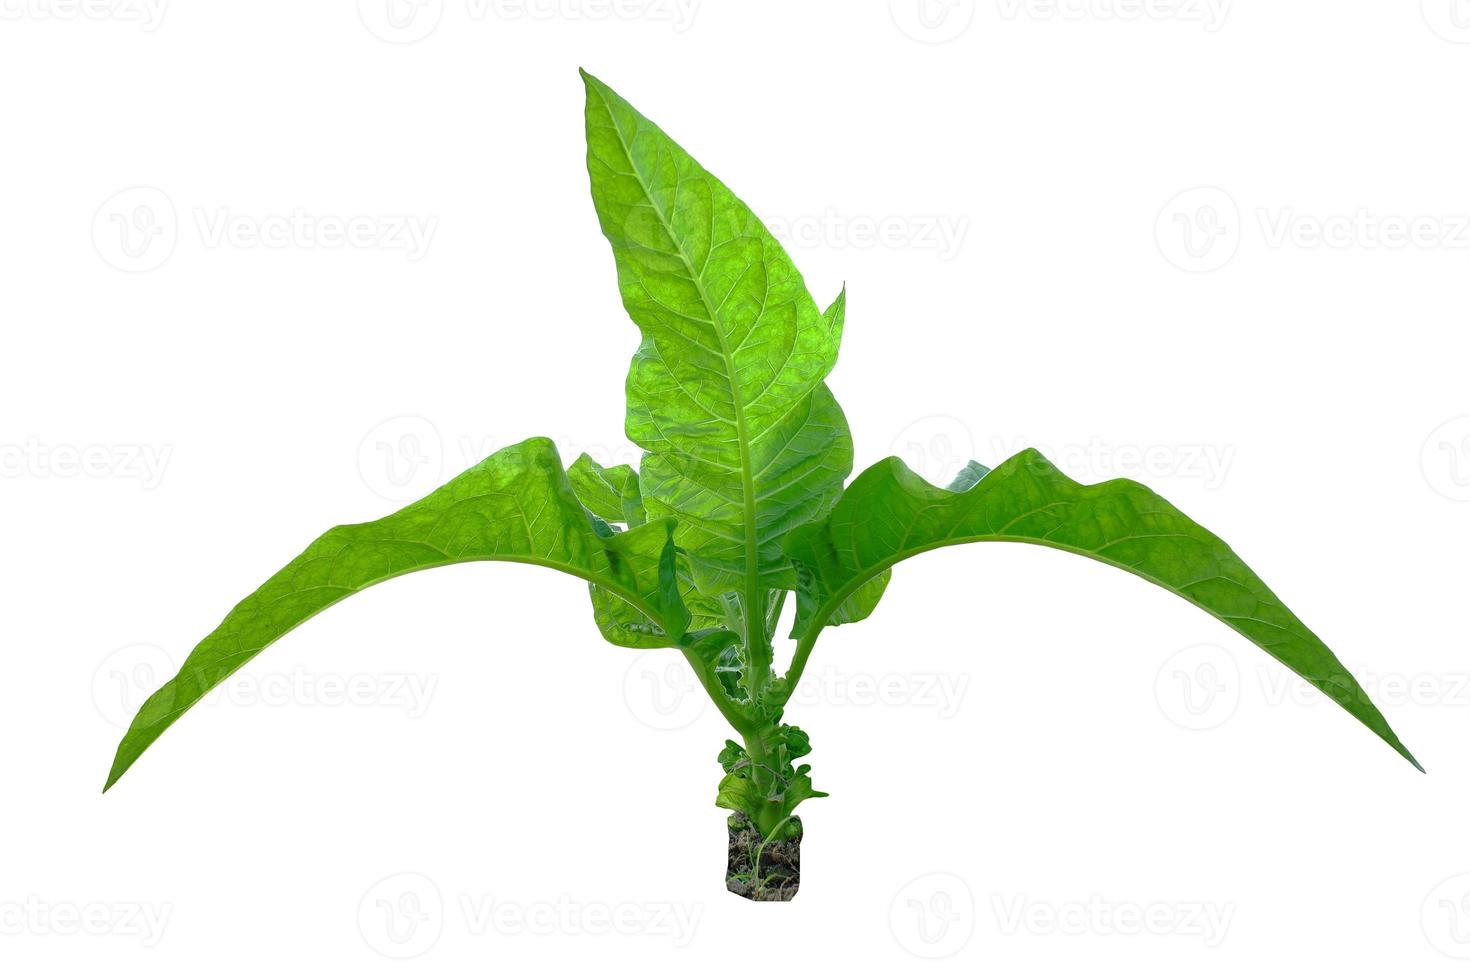 Braziliaanse tabaksbladeren op een witte achtergrond. nicotiana rustica, of azteekse tabak, sterke tabak, is een regenwoudplant in de familie solanaceae. foto